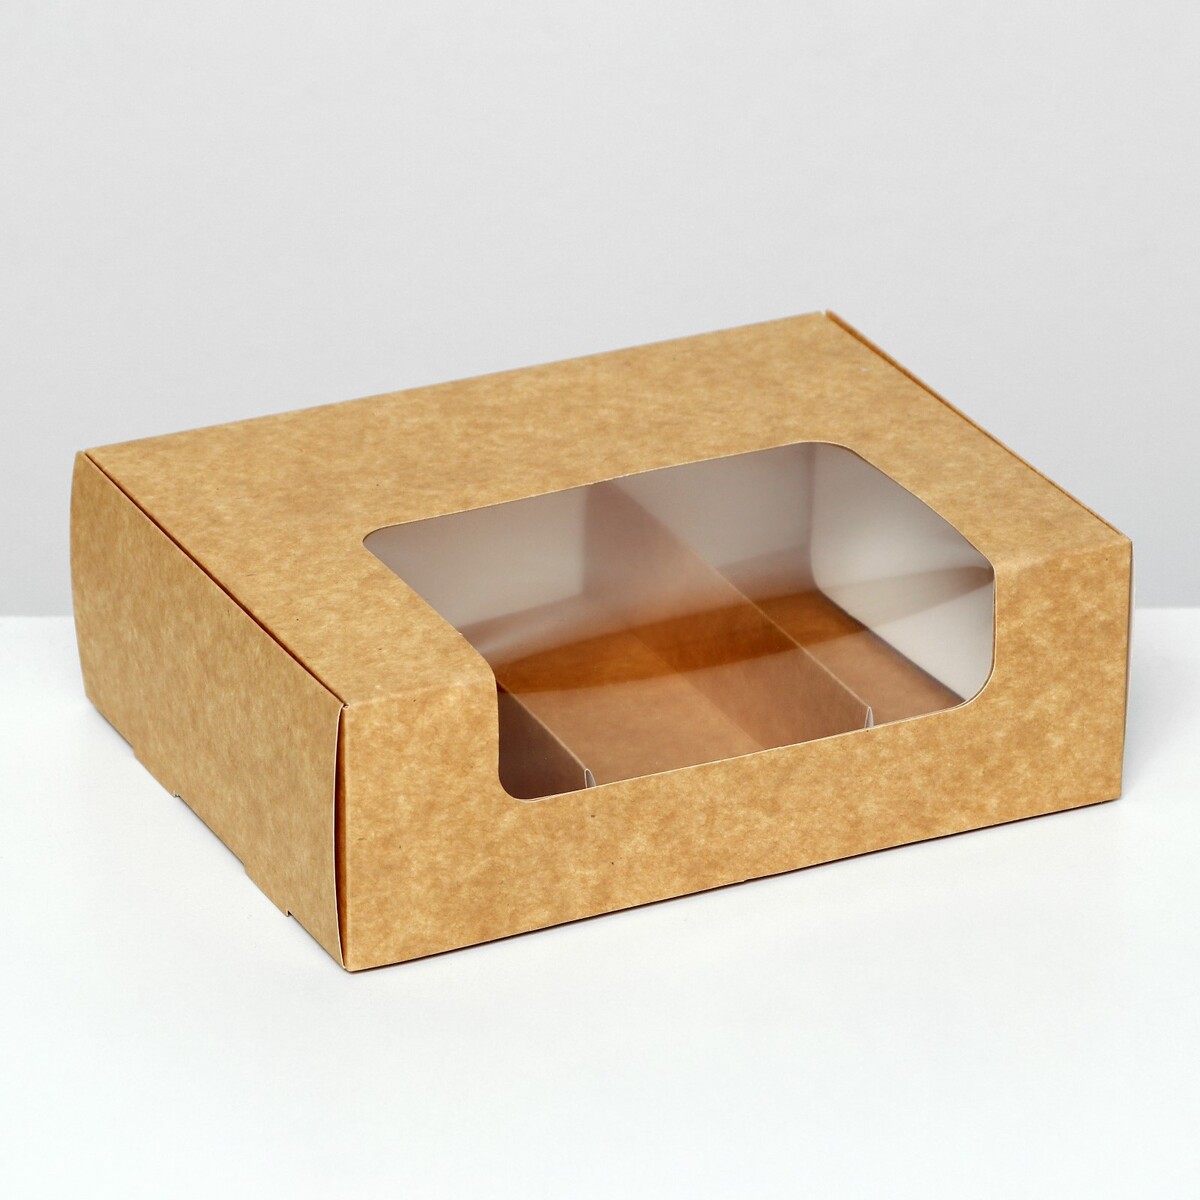 Коробка складная, под 3 эклера, крафт, 20 x 15 x 6 см коробка складная под 2 конфеты крафт 5 х 10 5 х 3 5 см